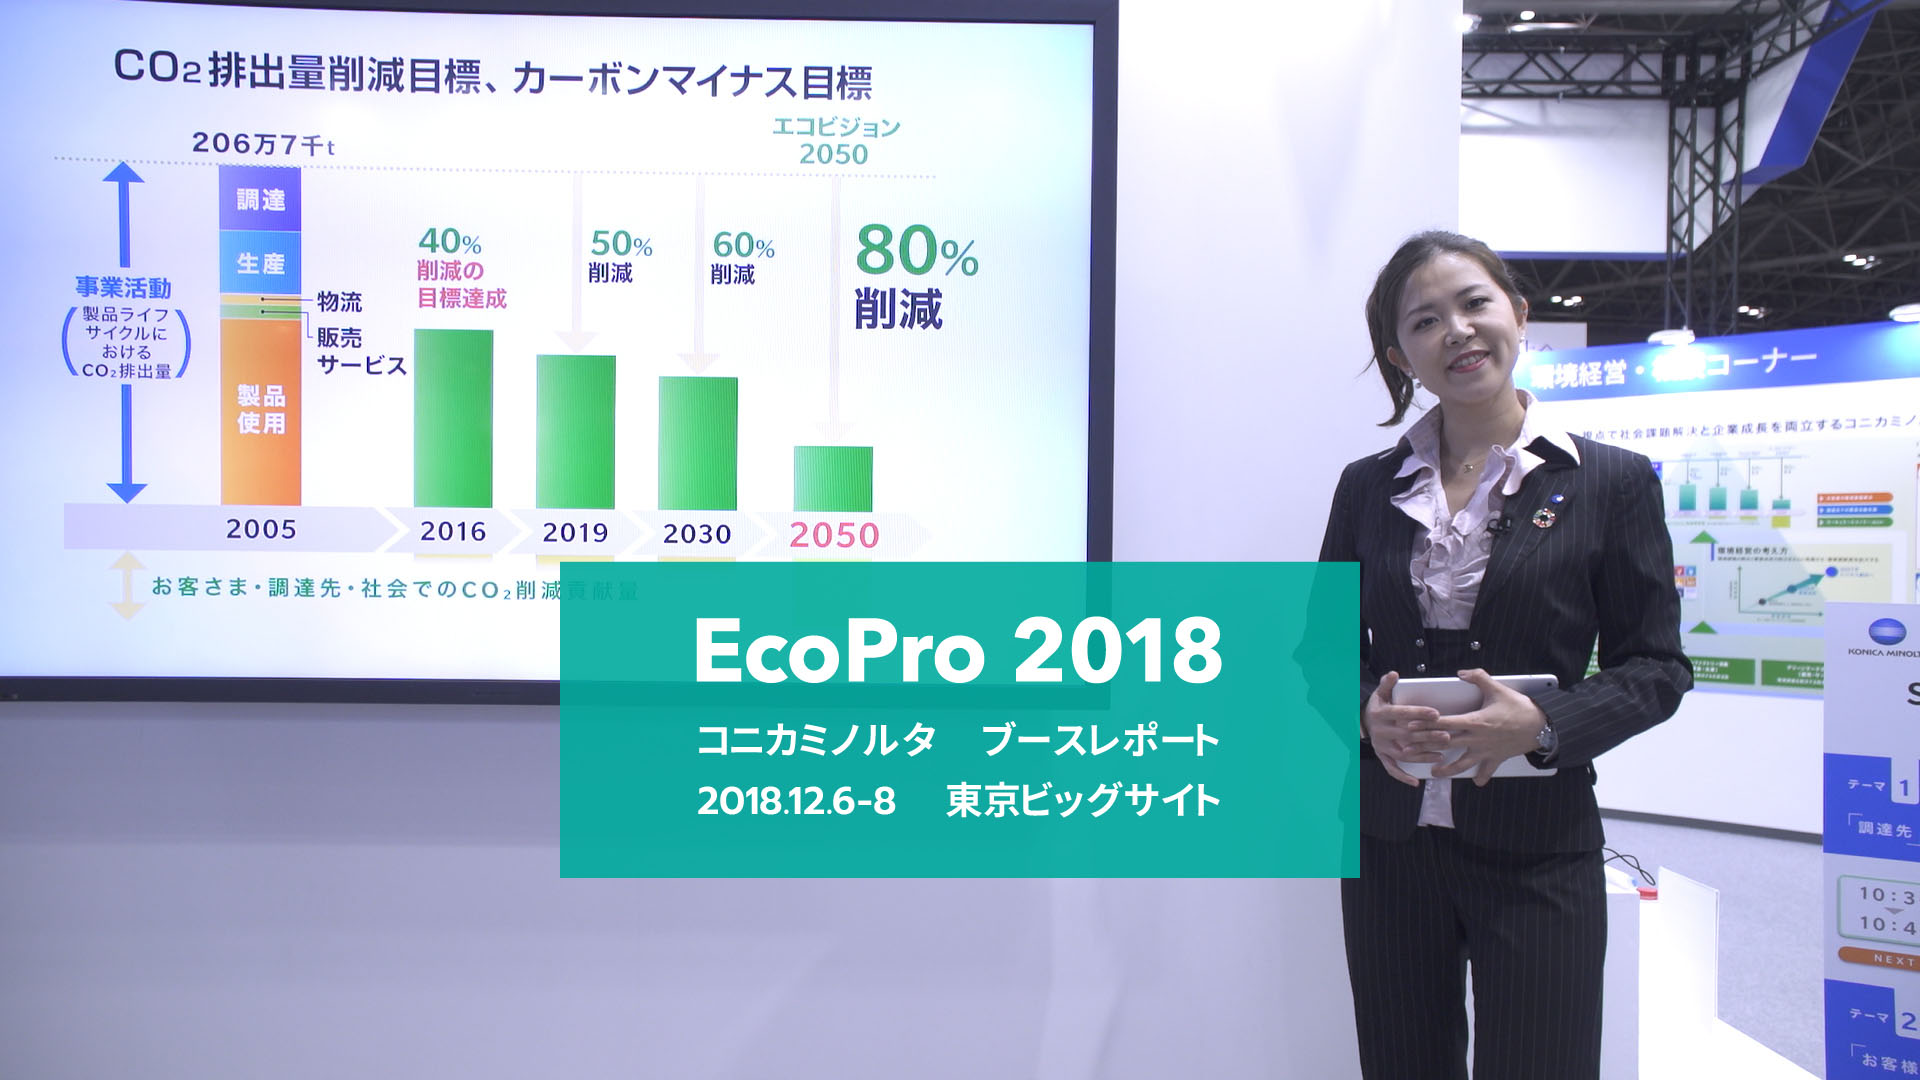 ecopro2018会場速報 日本語版